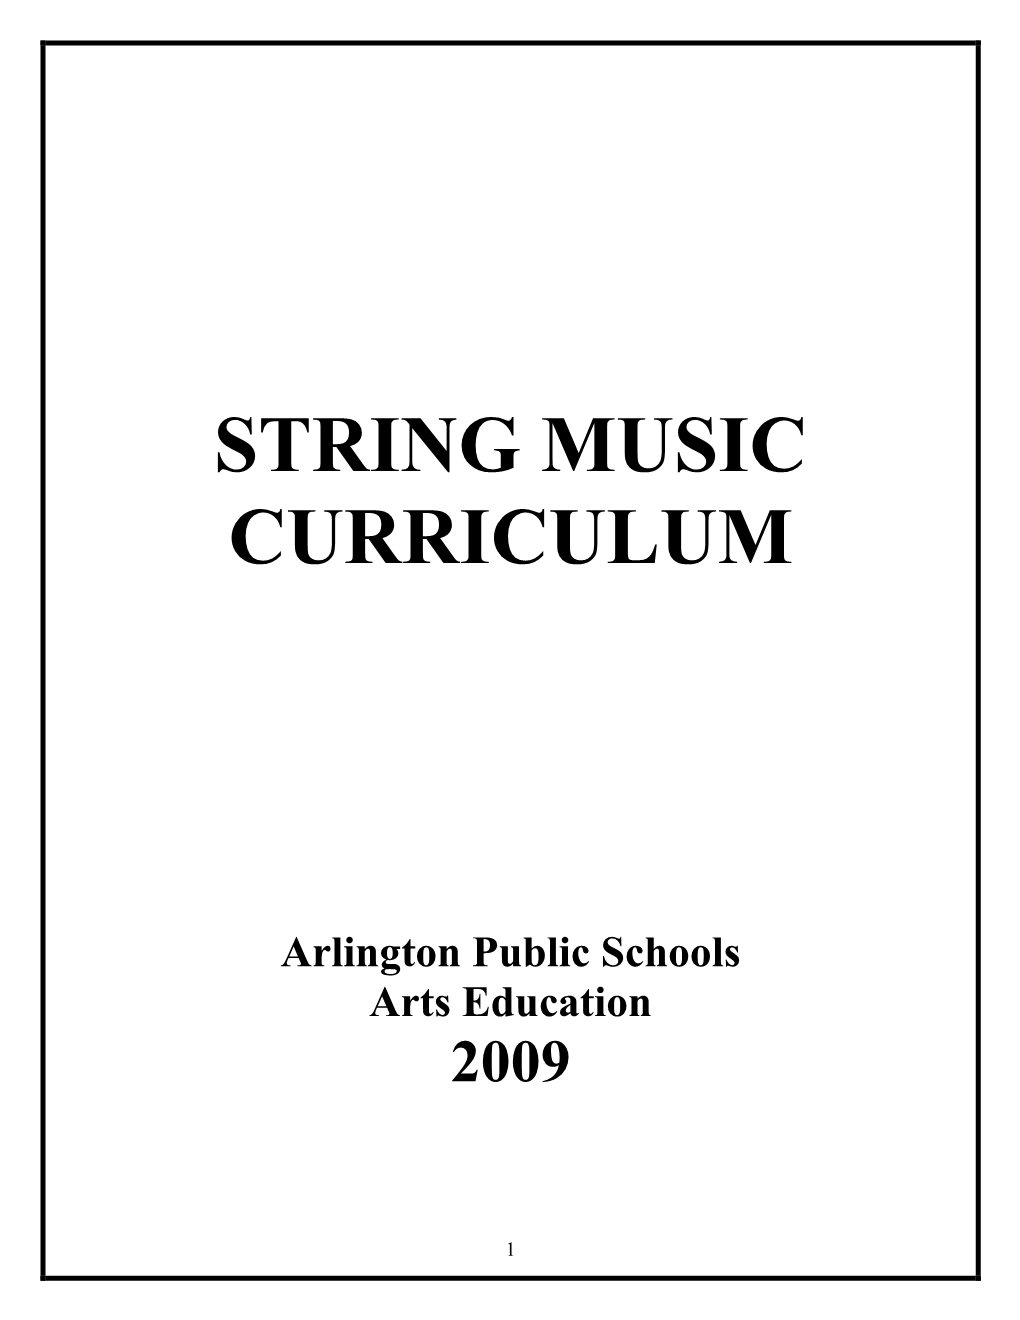 Strings Curriculum